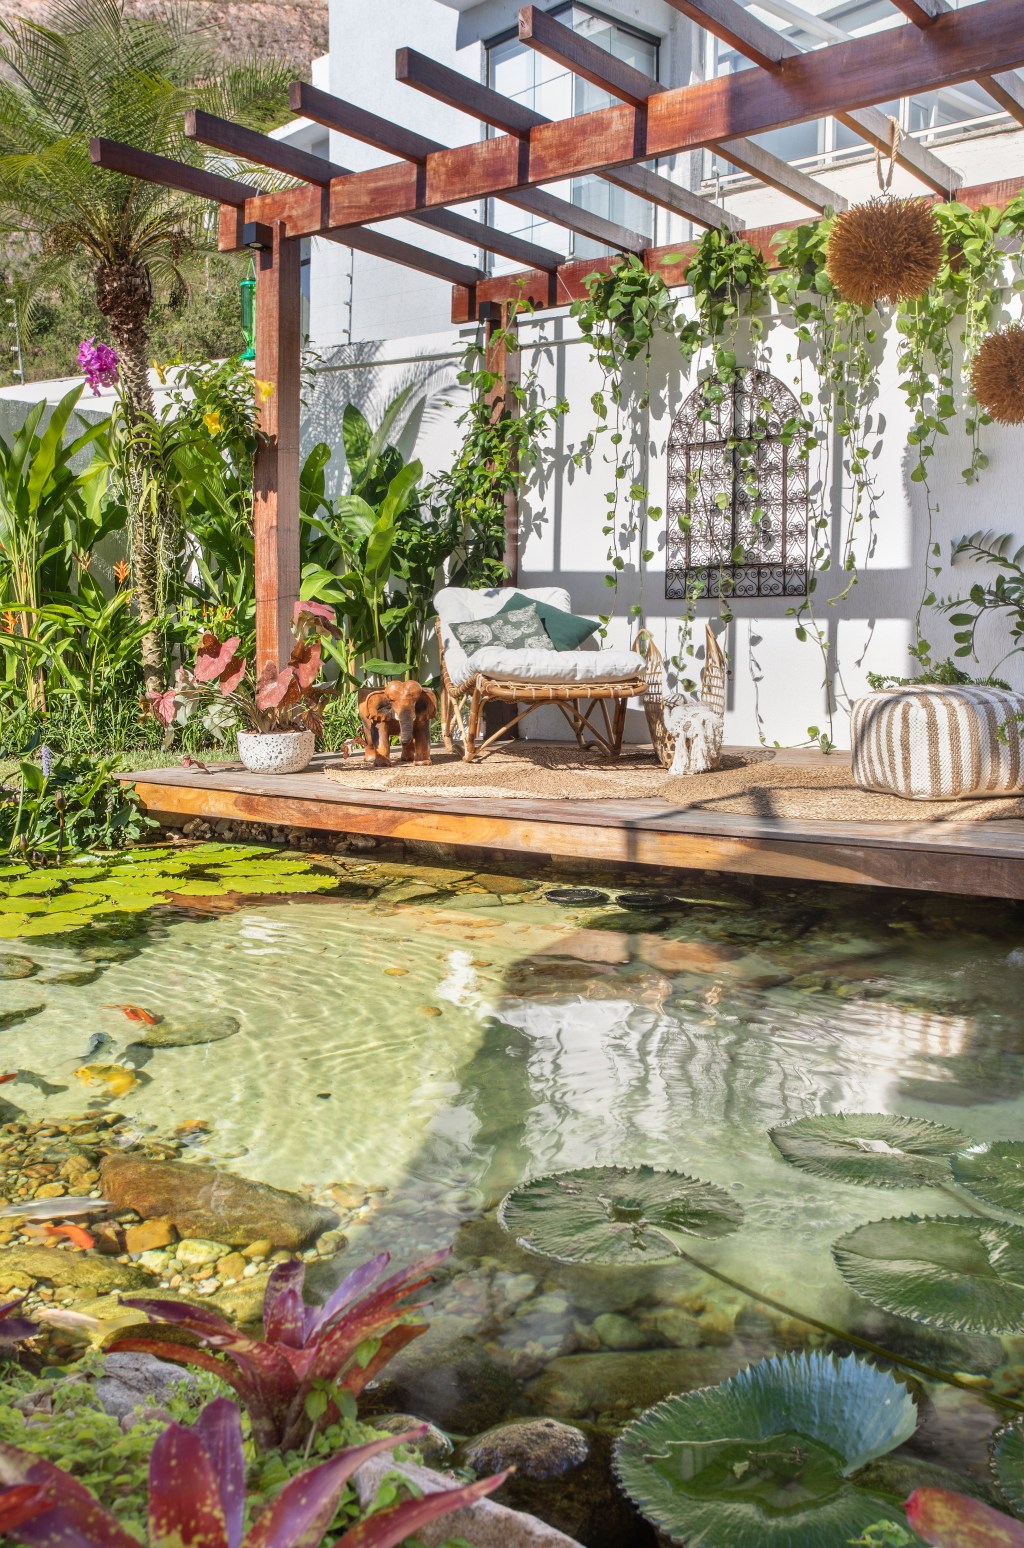 Jardim de 900 m² tem lago com peixes, praia de areia branca e pomar. Projeto de Ana Veras e Bernardo Vieira. Na foto, pergolado com lago, plantas suspensas e gazebo.